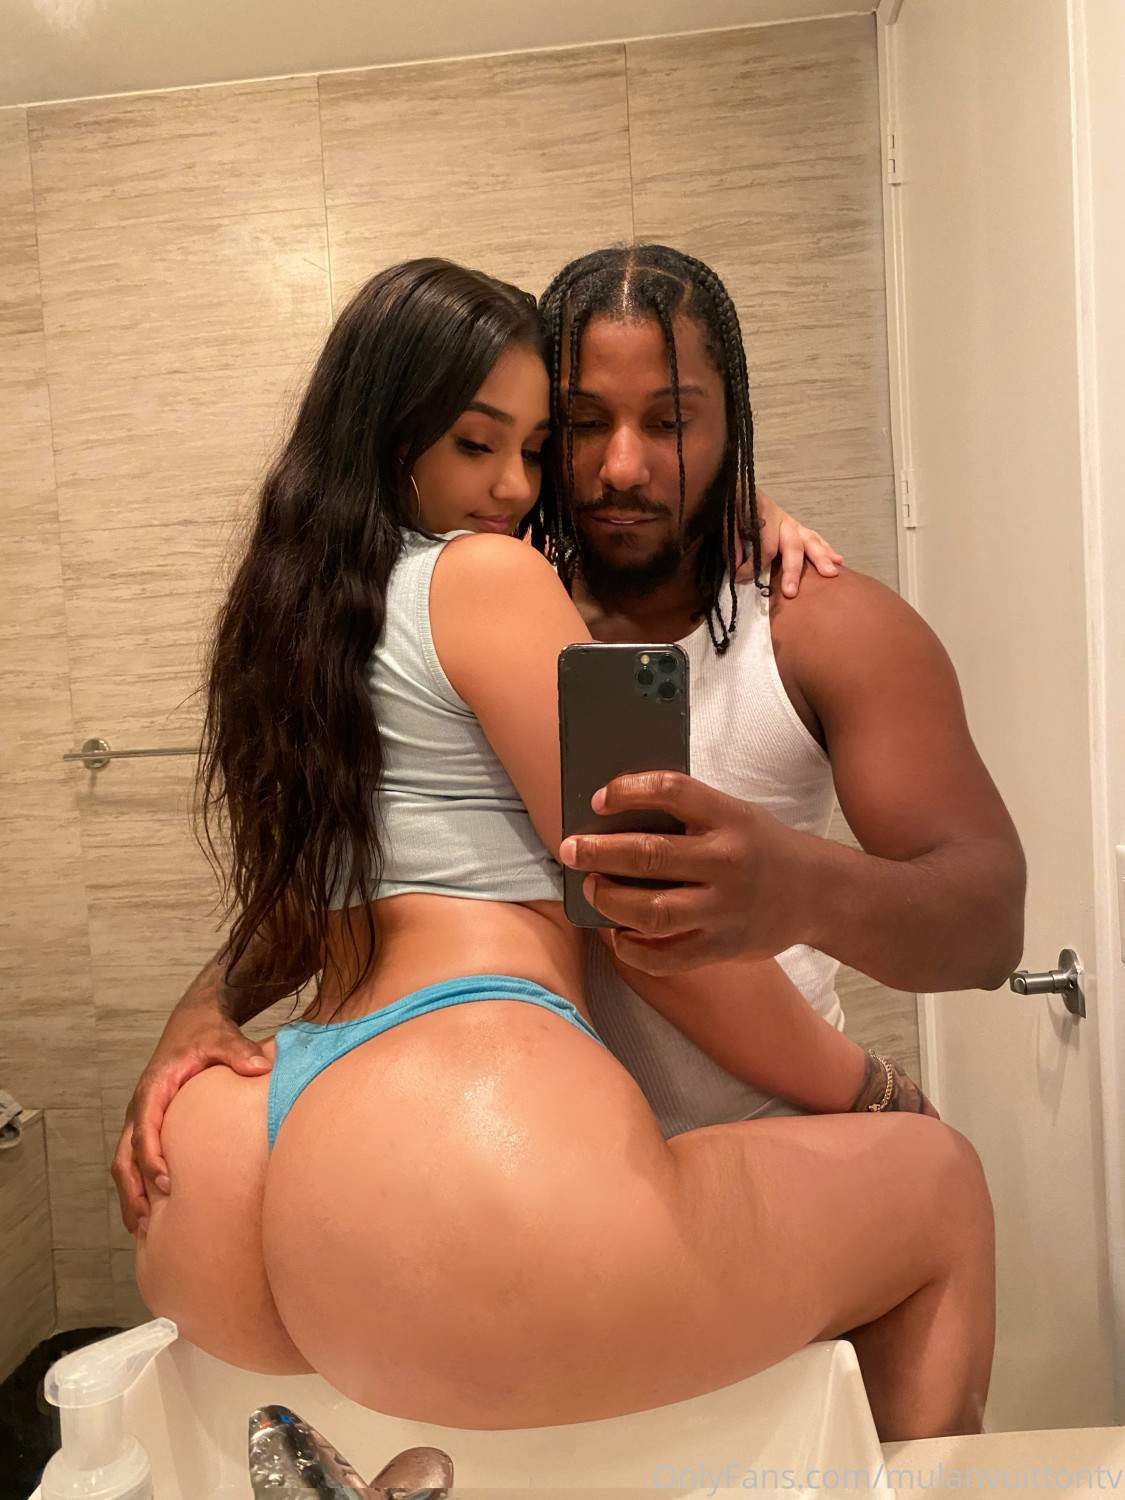 Big Ass Latina Xxx Poto - Big Booty Latina Leaks - Porn Videos & Photos - EroMe